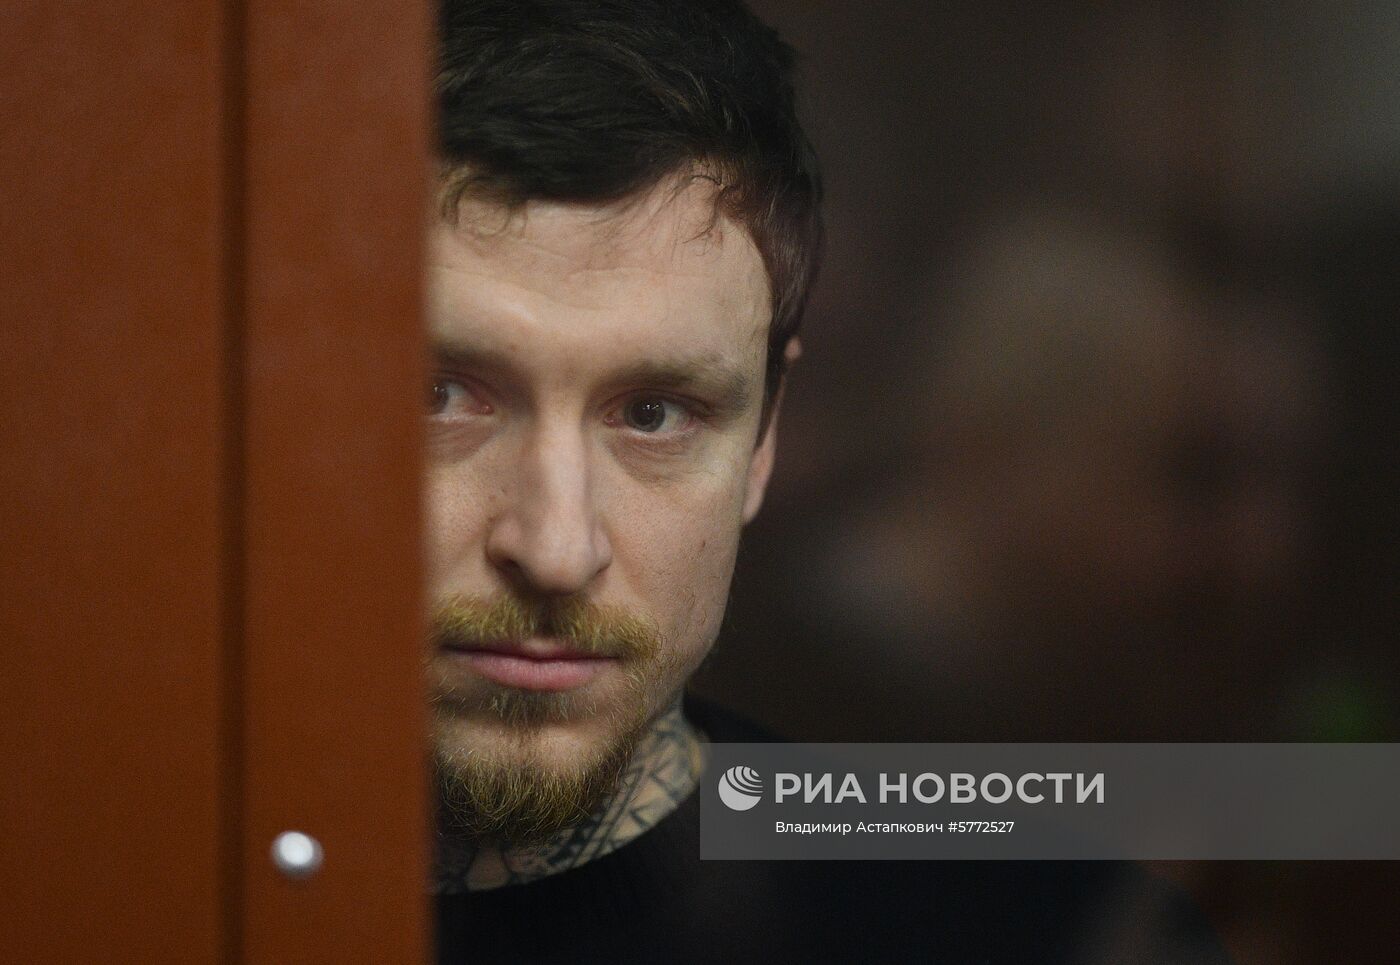 Рассмотрение ходатайства о продлении срока ареста П. Мамаеву и А. Кокорину